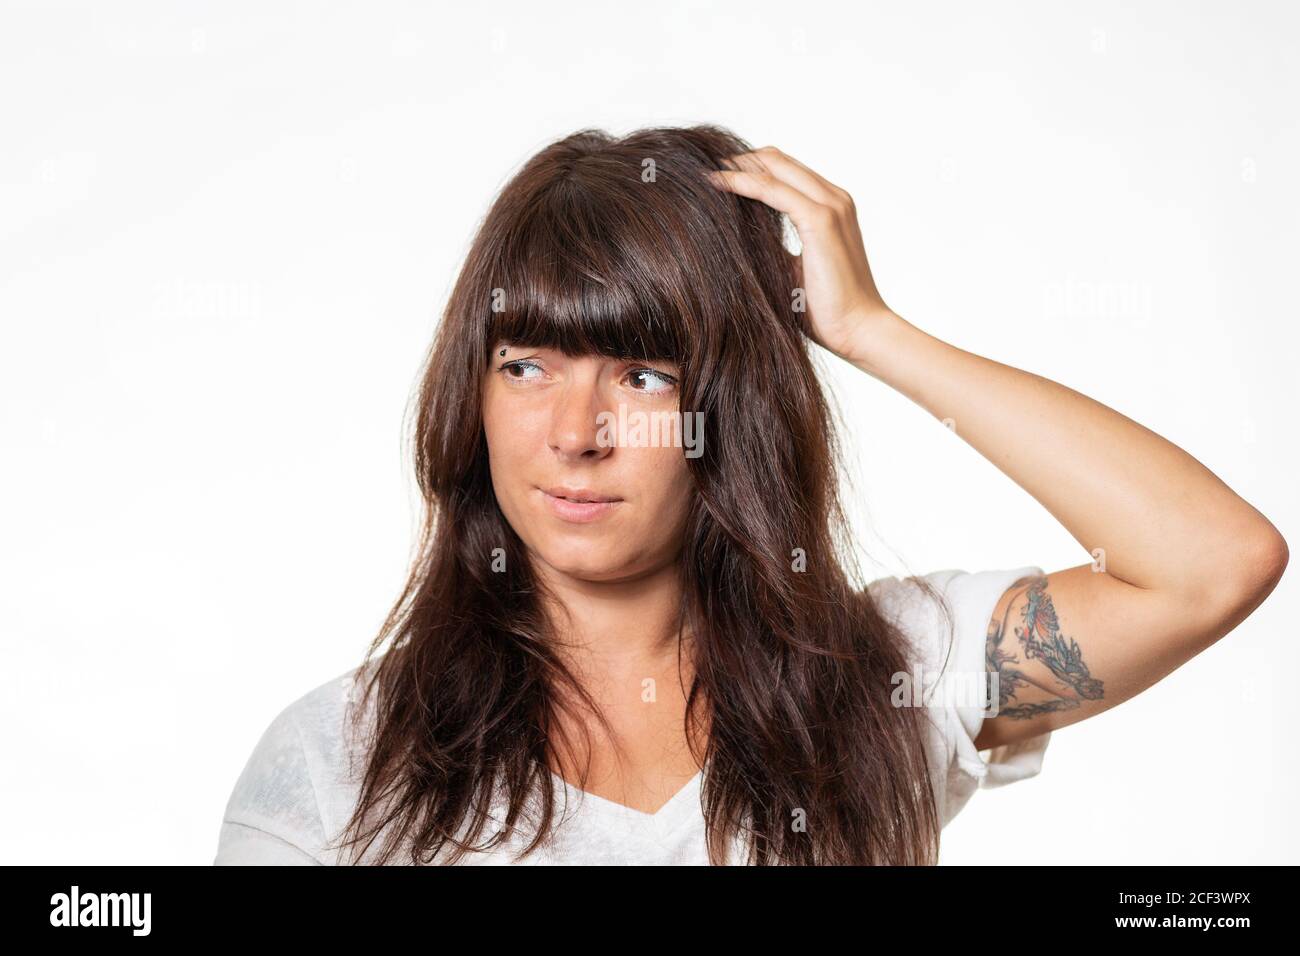 Porträt einer Frau mit einem Tattoo auf ihrem Arm, das sich hinter ihrem Kopf befindet und an Migräne leidet. Weißer Hintergrund. Das Konzept der Kopfschmerzen. Stockfoto